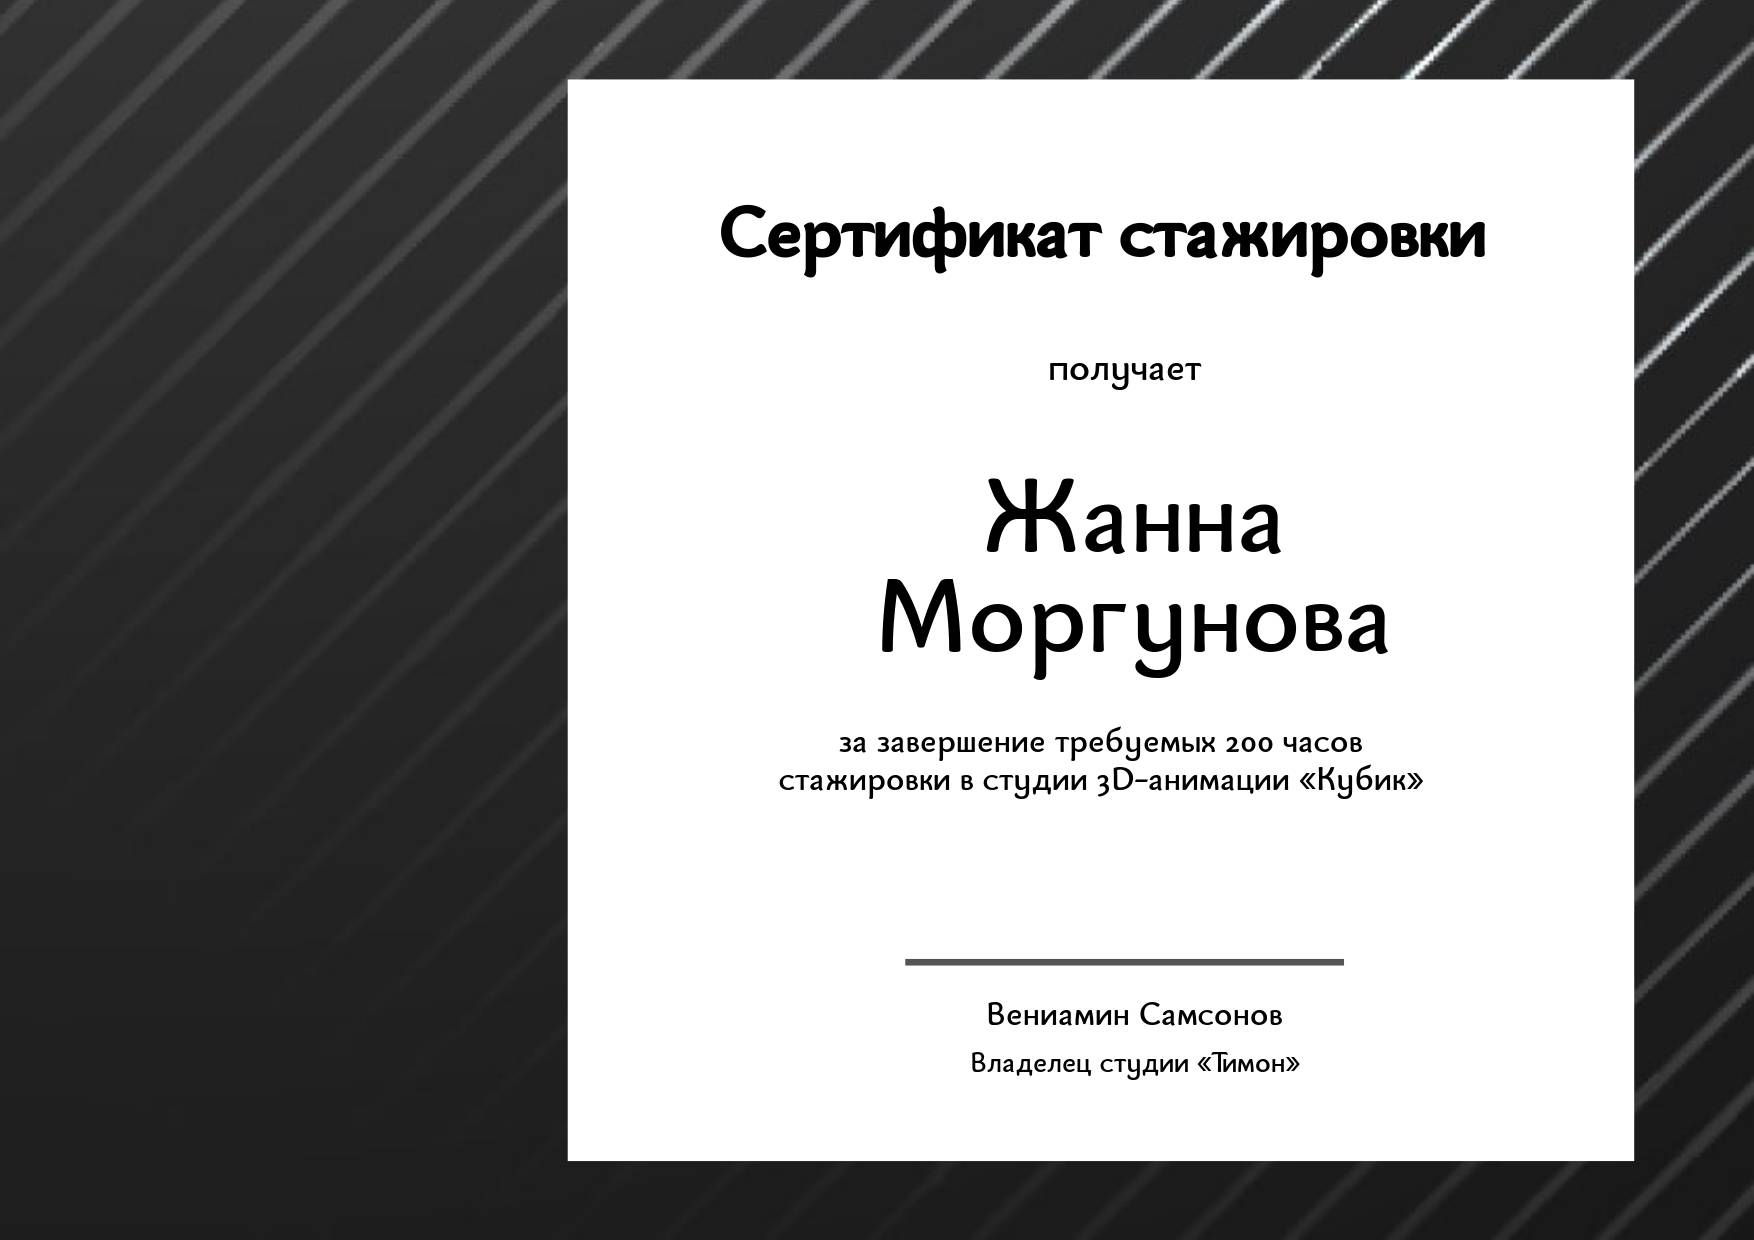 Строгий черный сертификат с тонкими диагональными полосками с готовым заголовком, текстом и местом для печати